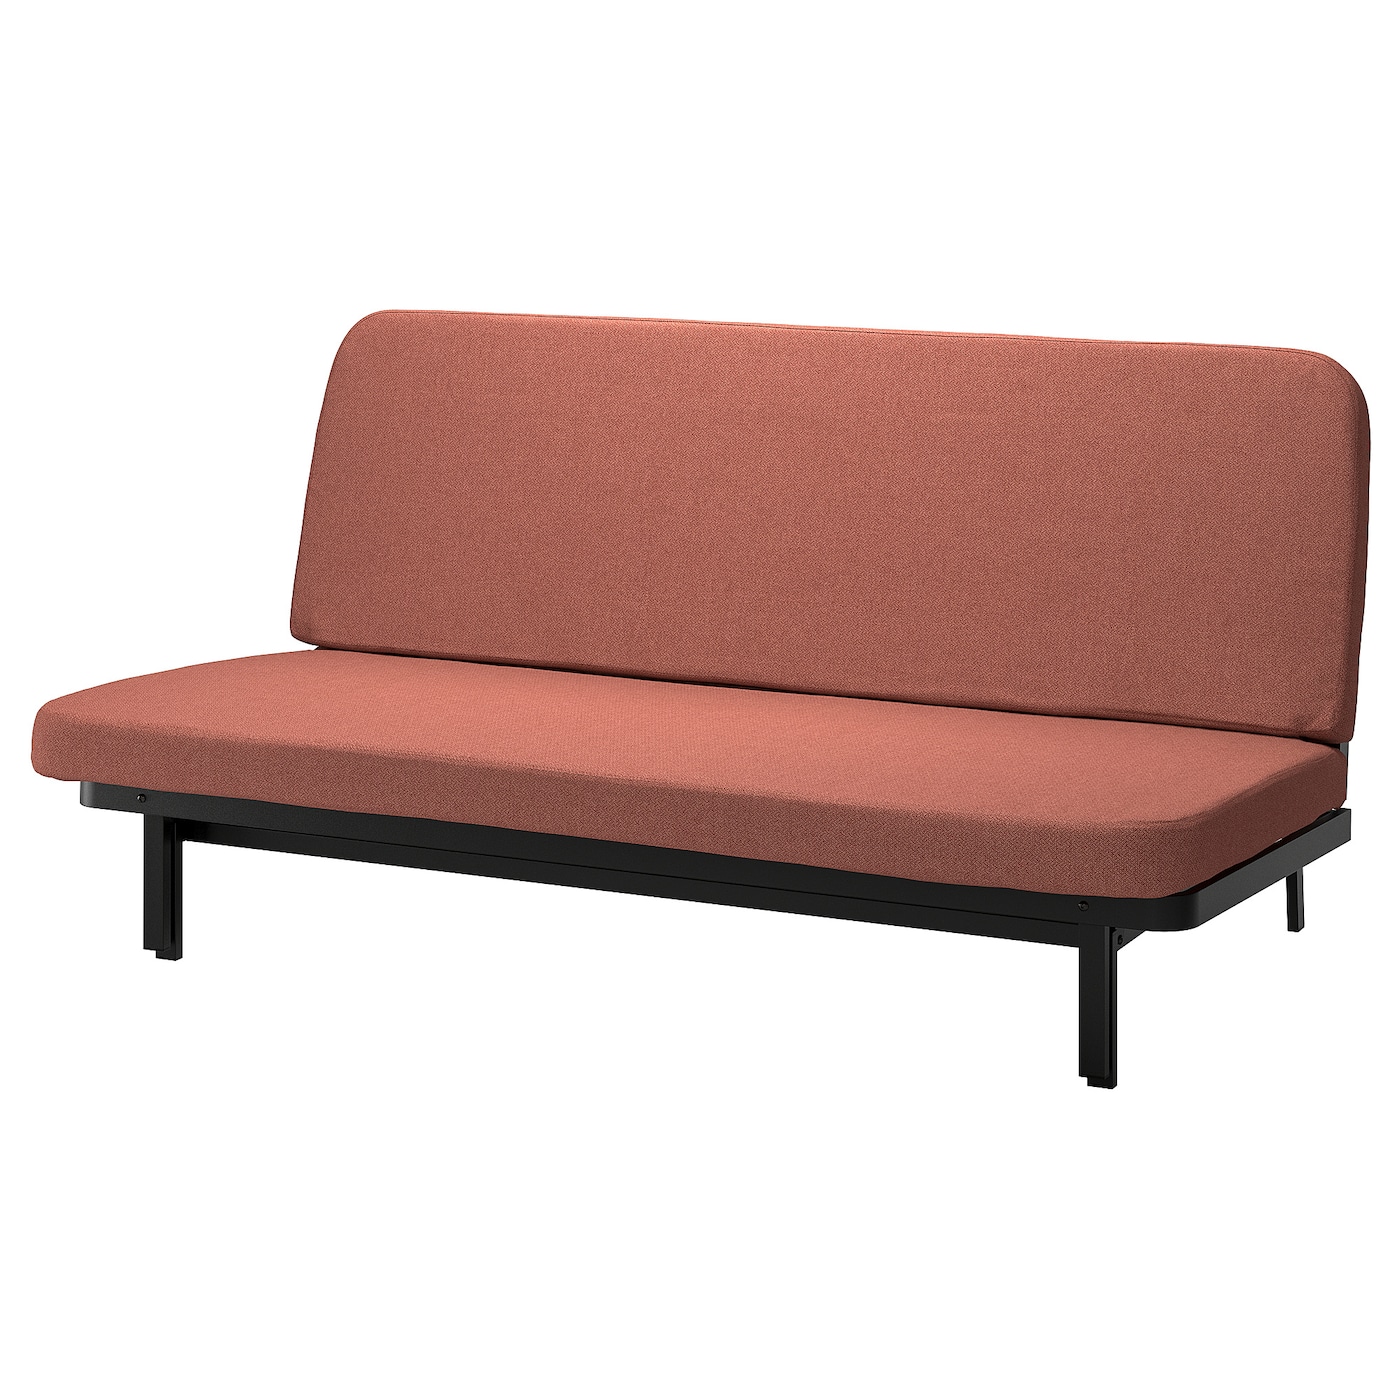 NYHAMN 3-местный диван-кровать, поролоновый матрас в комплекте/Скартофта красный/коричневый IKEA съемный и моющийся ленивый диван татами складной одинарный диван кровать спинка стул для балкона эркера складная подушка диван стул